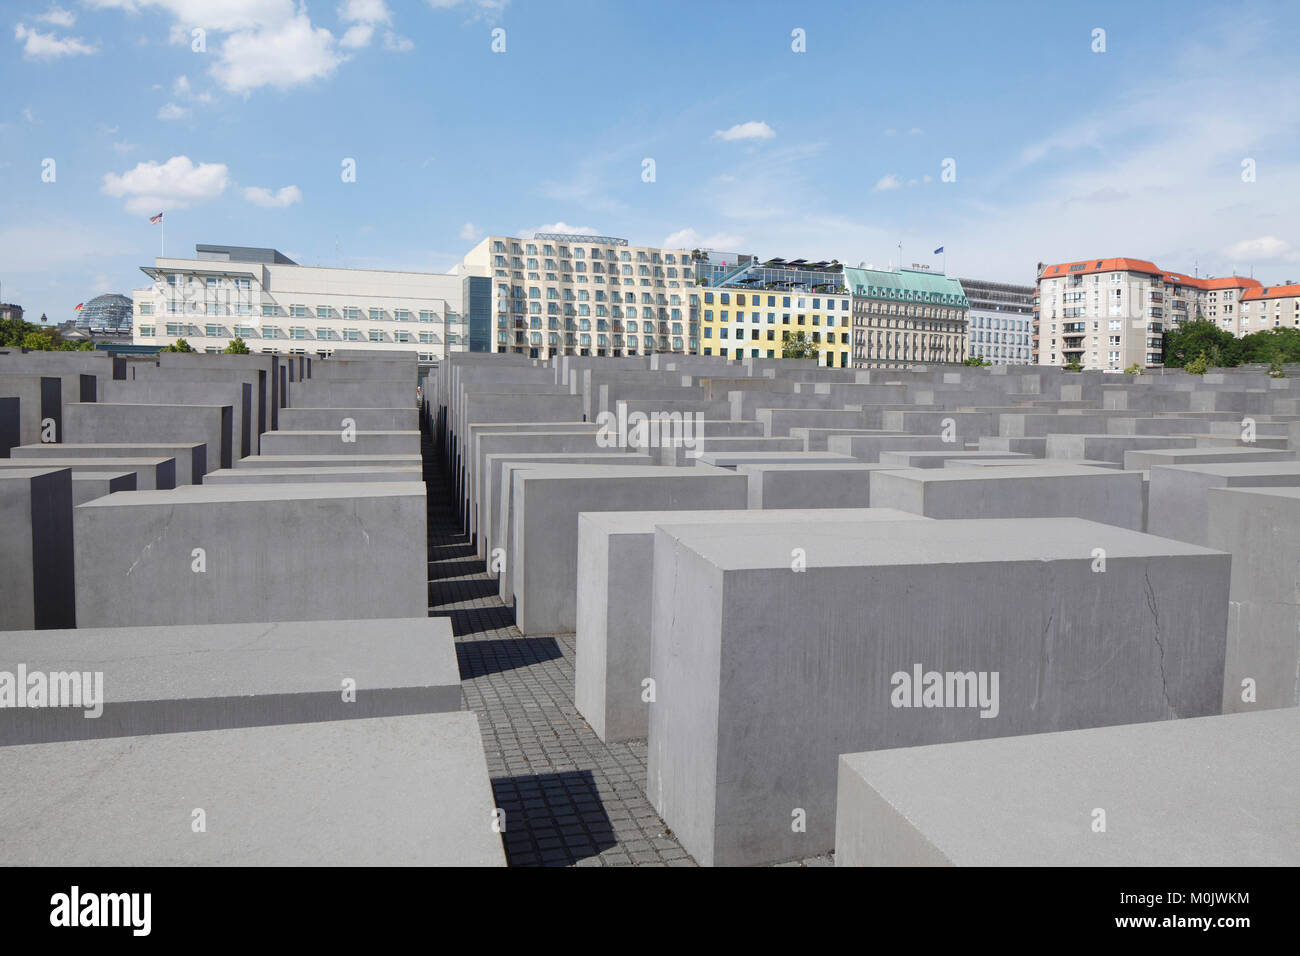 Mémorial de l'holocauste, le Mémorial aux Juifs assassinés d'Europe, Berlin, Allemagne, Europe I Denkmal für die ermordeten Juden Europas oder Holocaust-Mahnm Banque D'Images